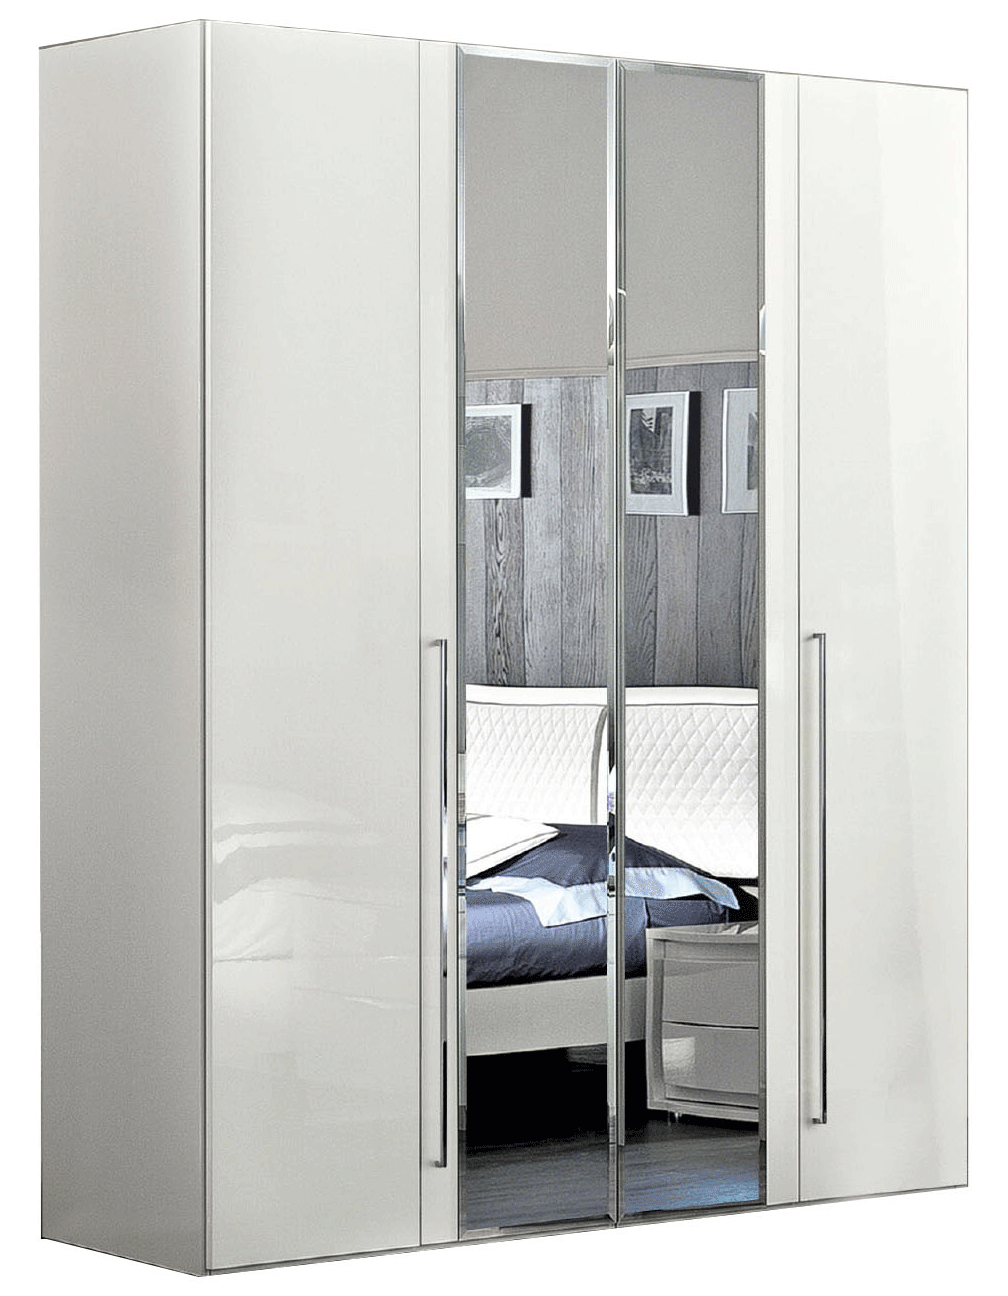 Brands Camel Classic Living Rooms, Italy Dama Bianca 4 Door Glass Doors Wardrobe White